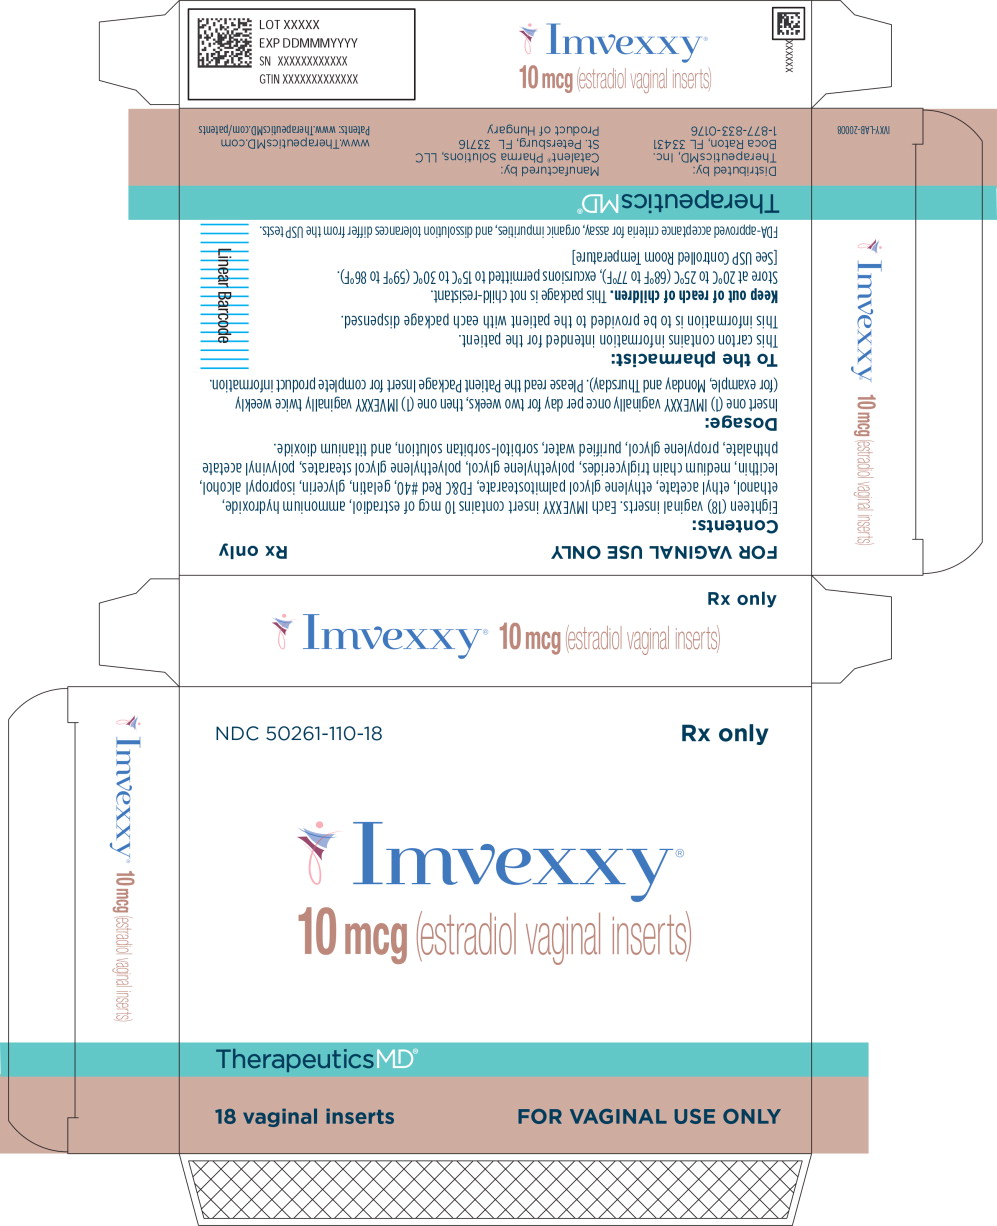 Principal Display Panel - Imvexxy 10 mcg 18 Count Carton Label
